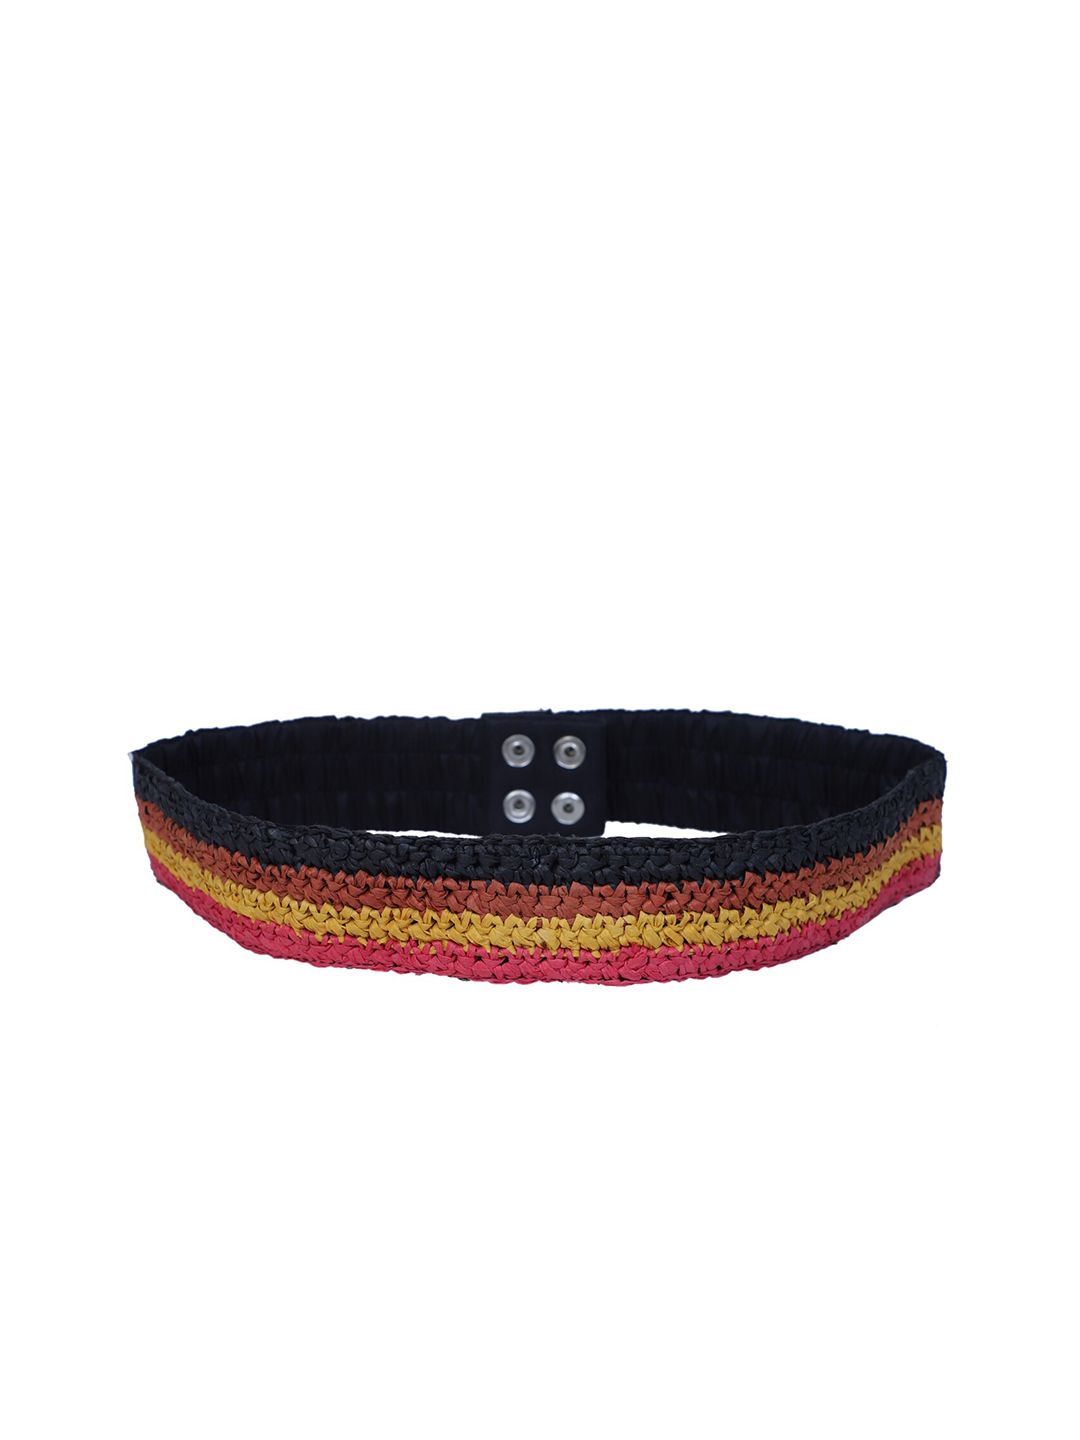 Diwaah Women Black & Brown Braided Belt Price in India